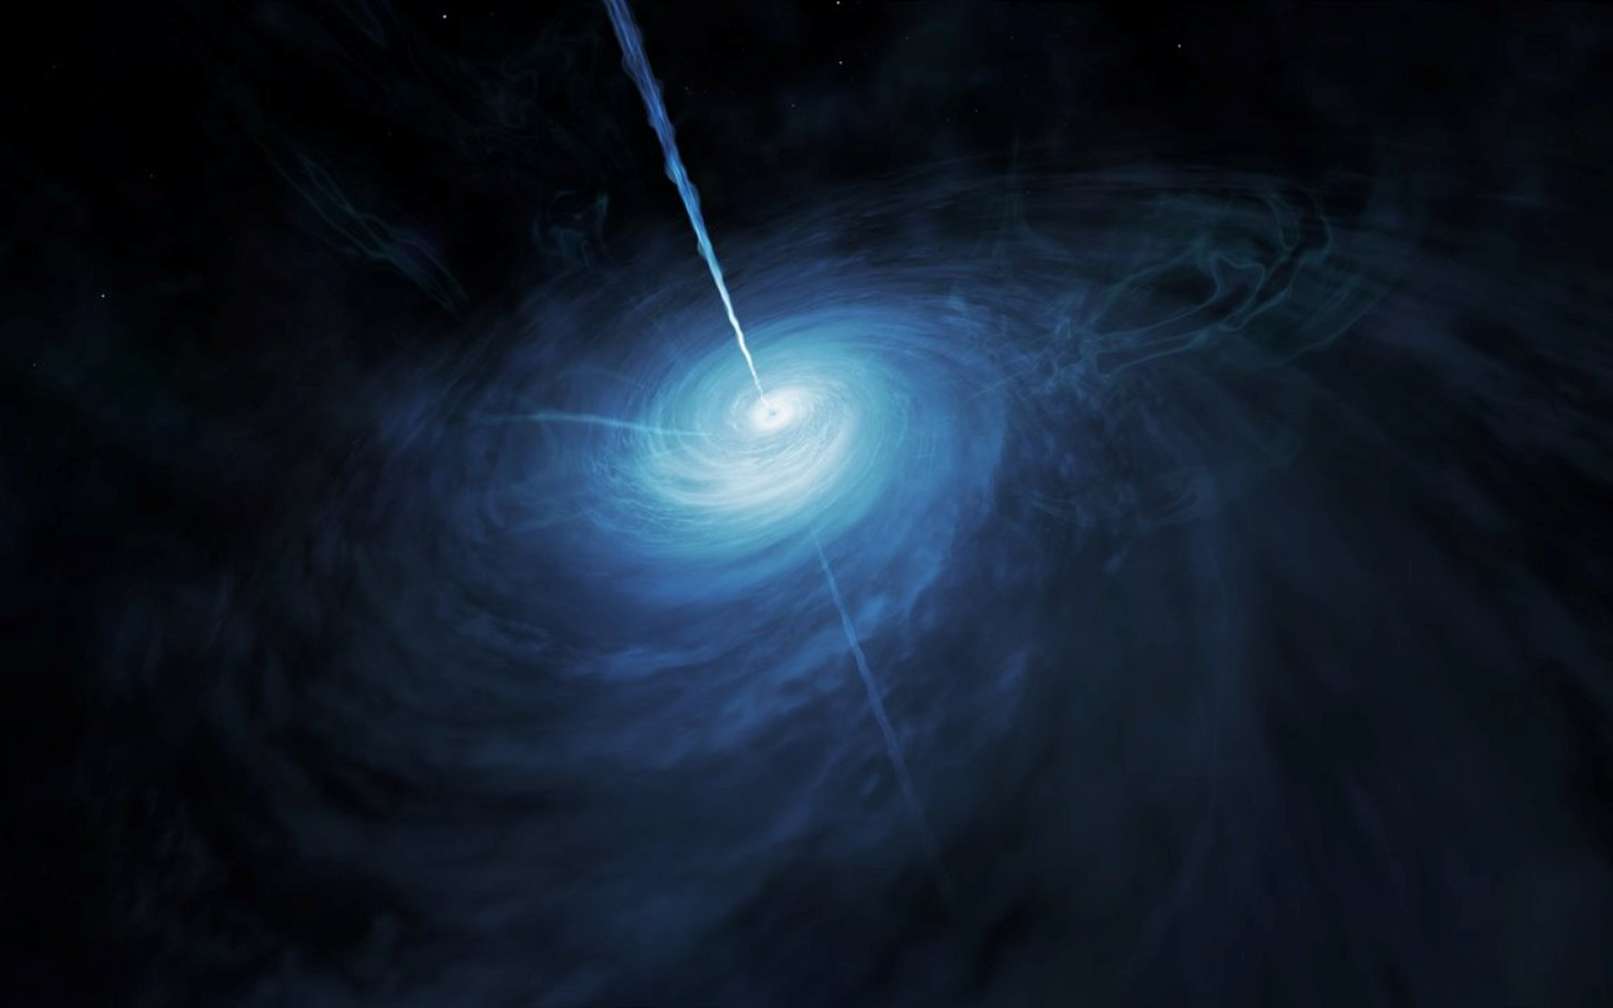 Une vue d'artiste de l'accrétion de la matière sous forme de gaz autour d'un trou noir supermassif de Kerr en rotation. © Nasa, M. Kornmesser